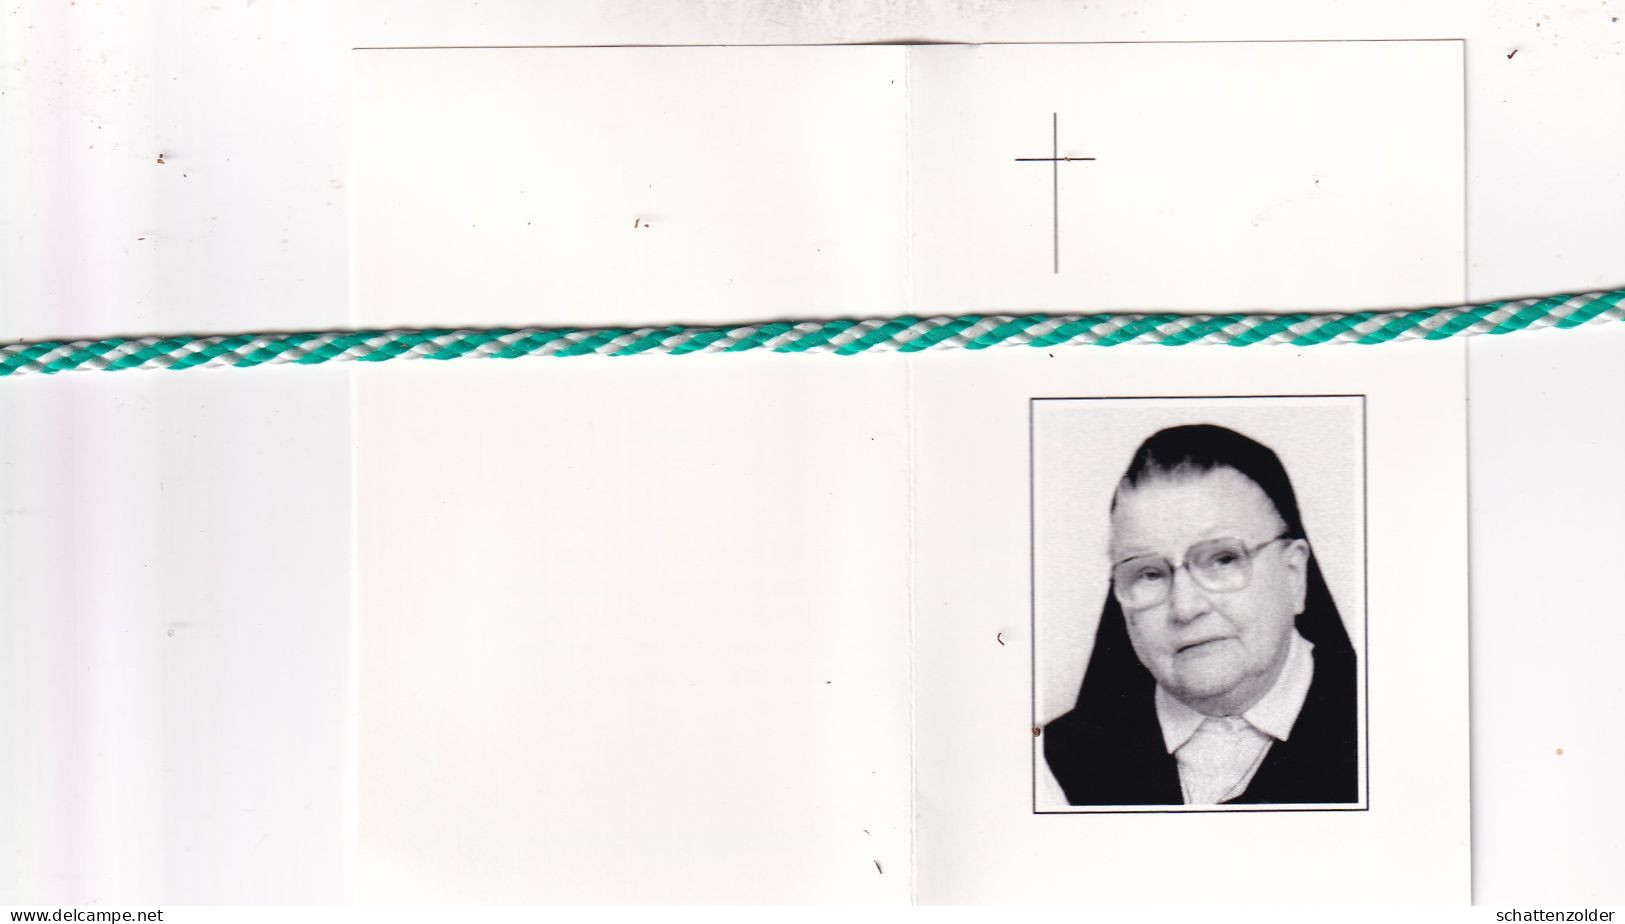 Zuster Marie-Gratilia (Emma Van Hoof), Heist Op Den Berg 1917, Lier 2003. Foto - Décès